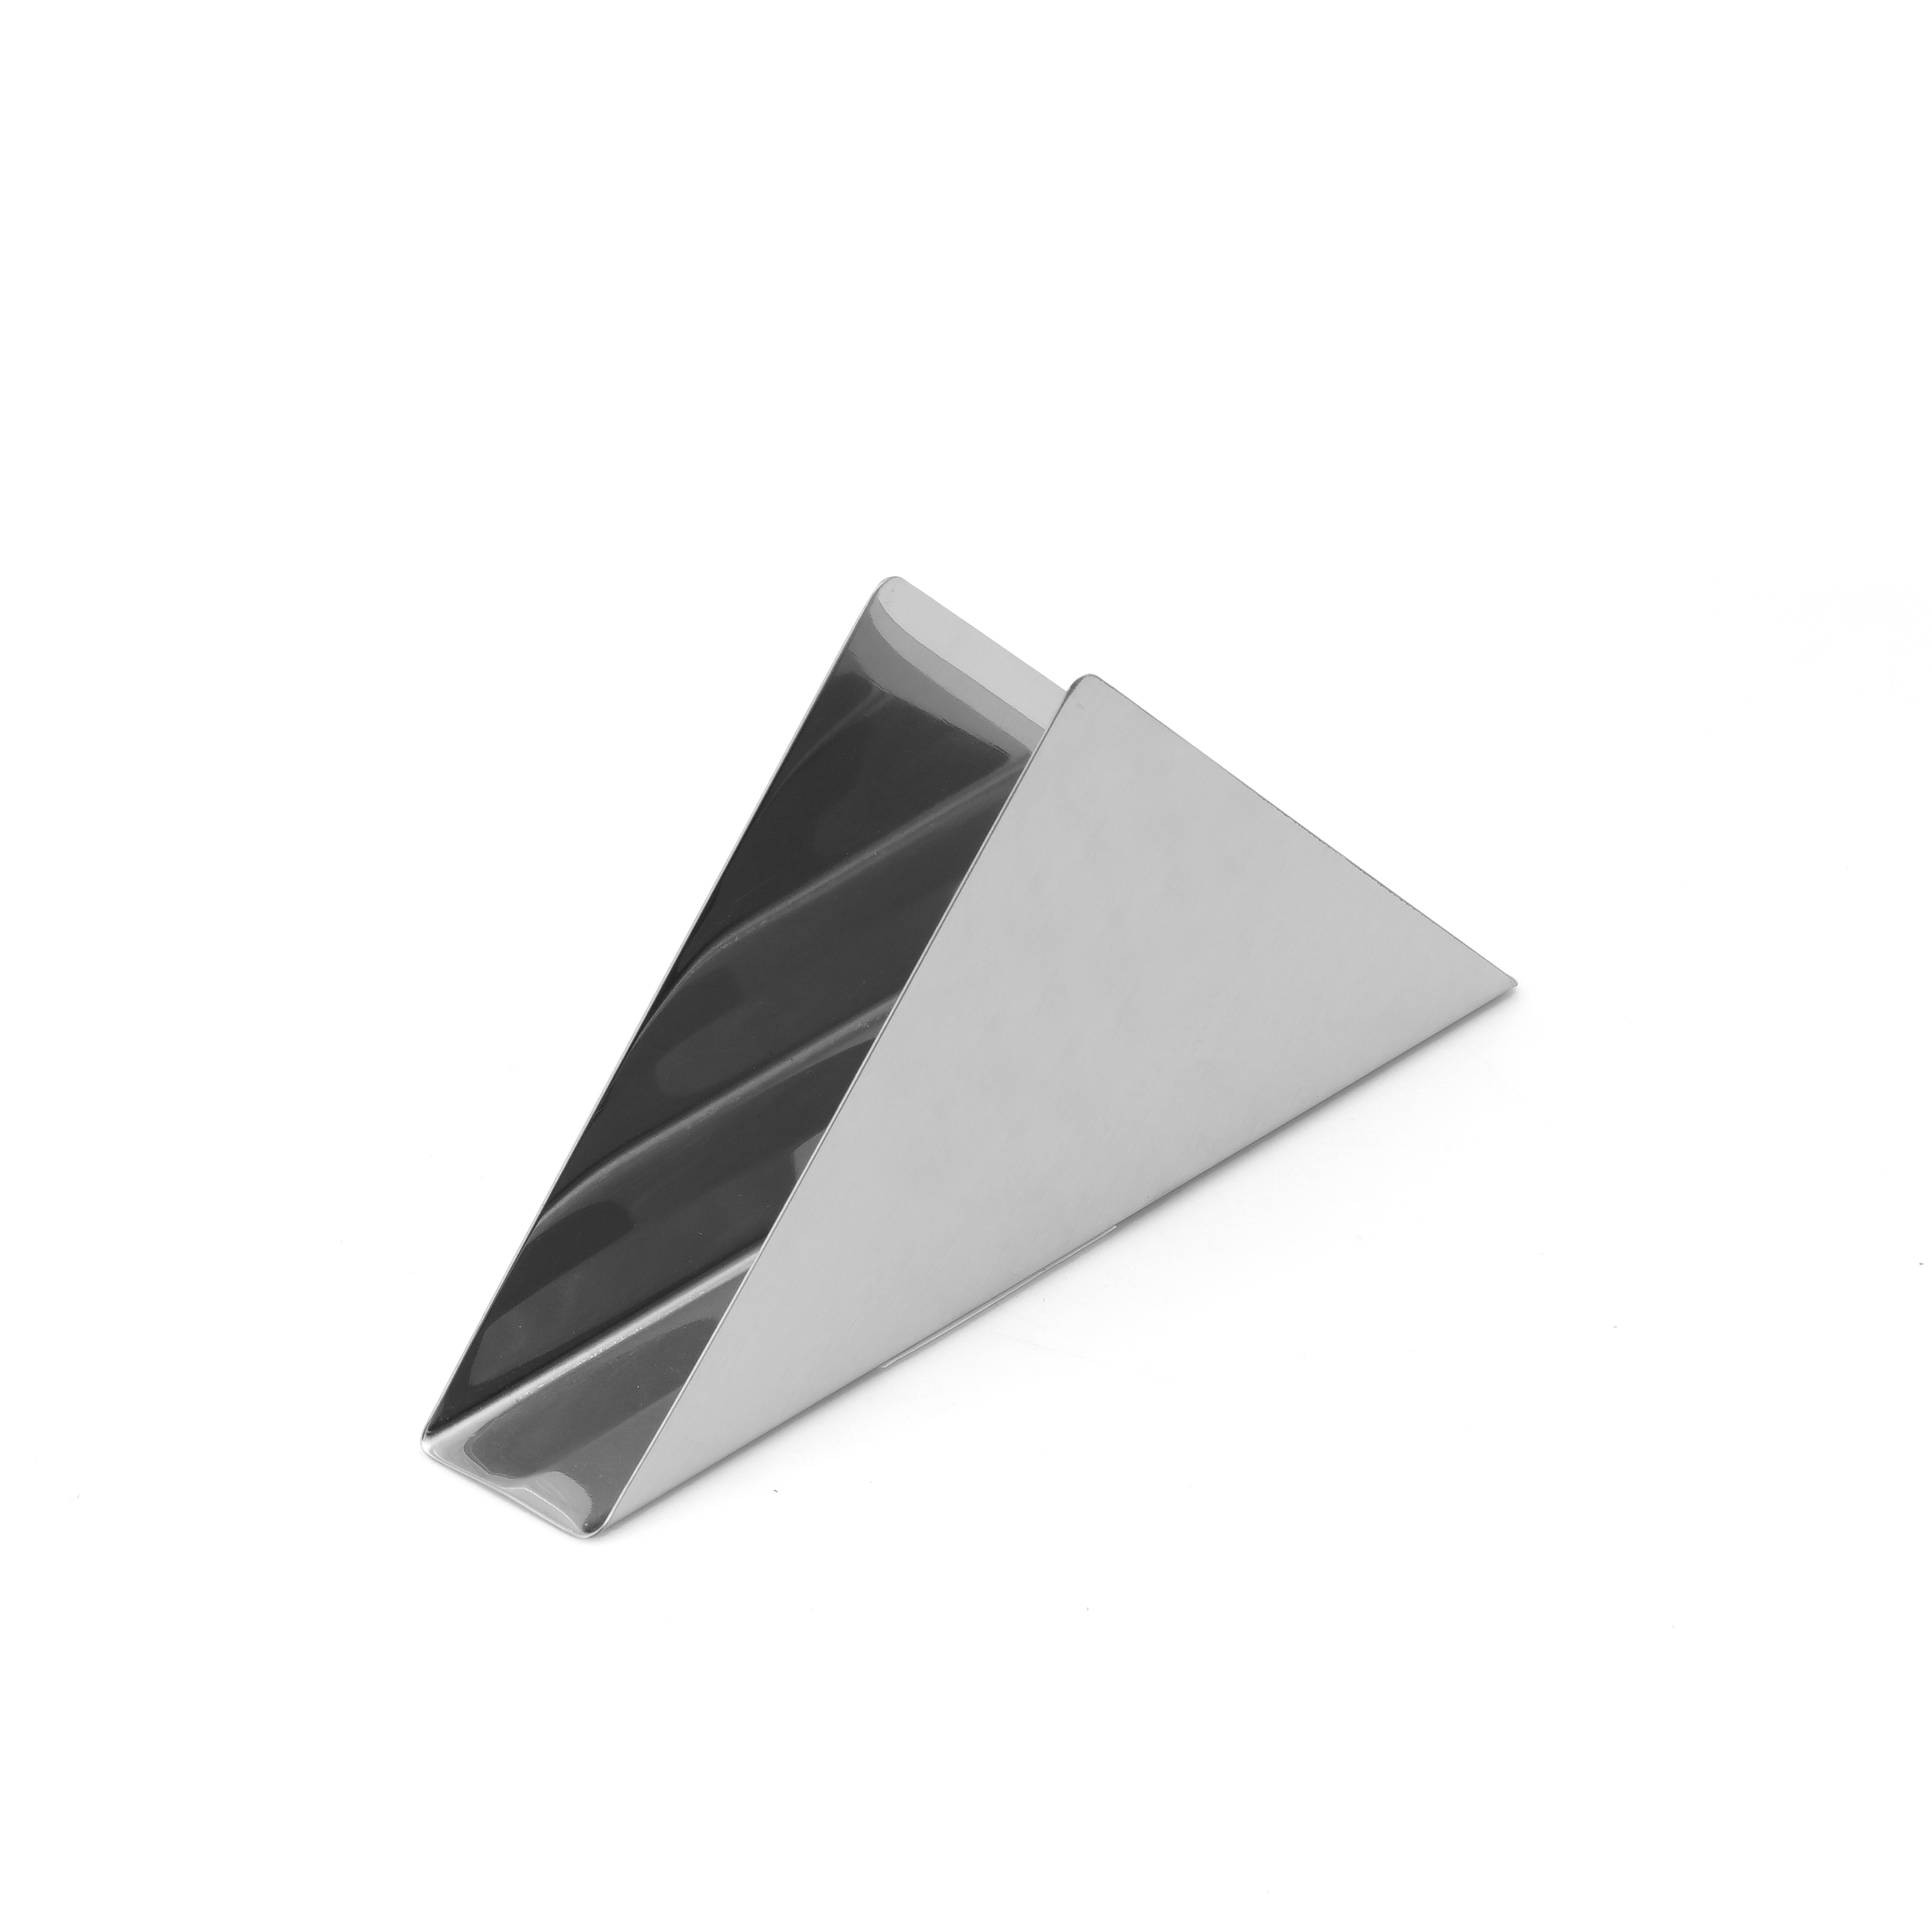 Khay đựng khăn giấy hình tam giác bằng inox 201